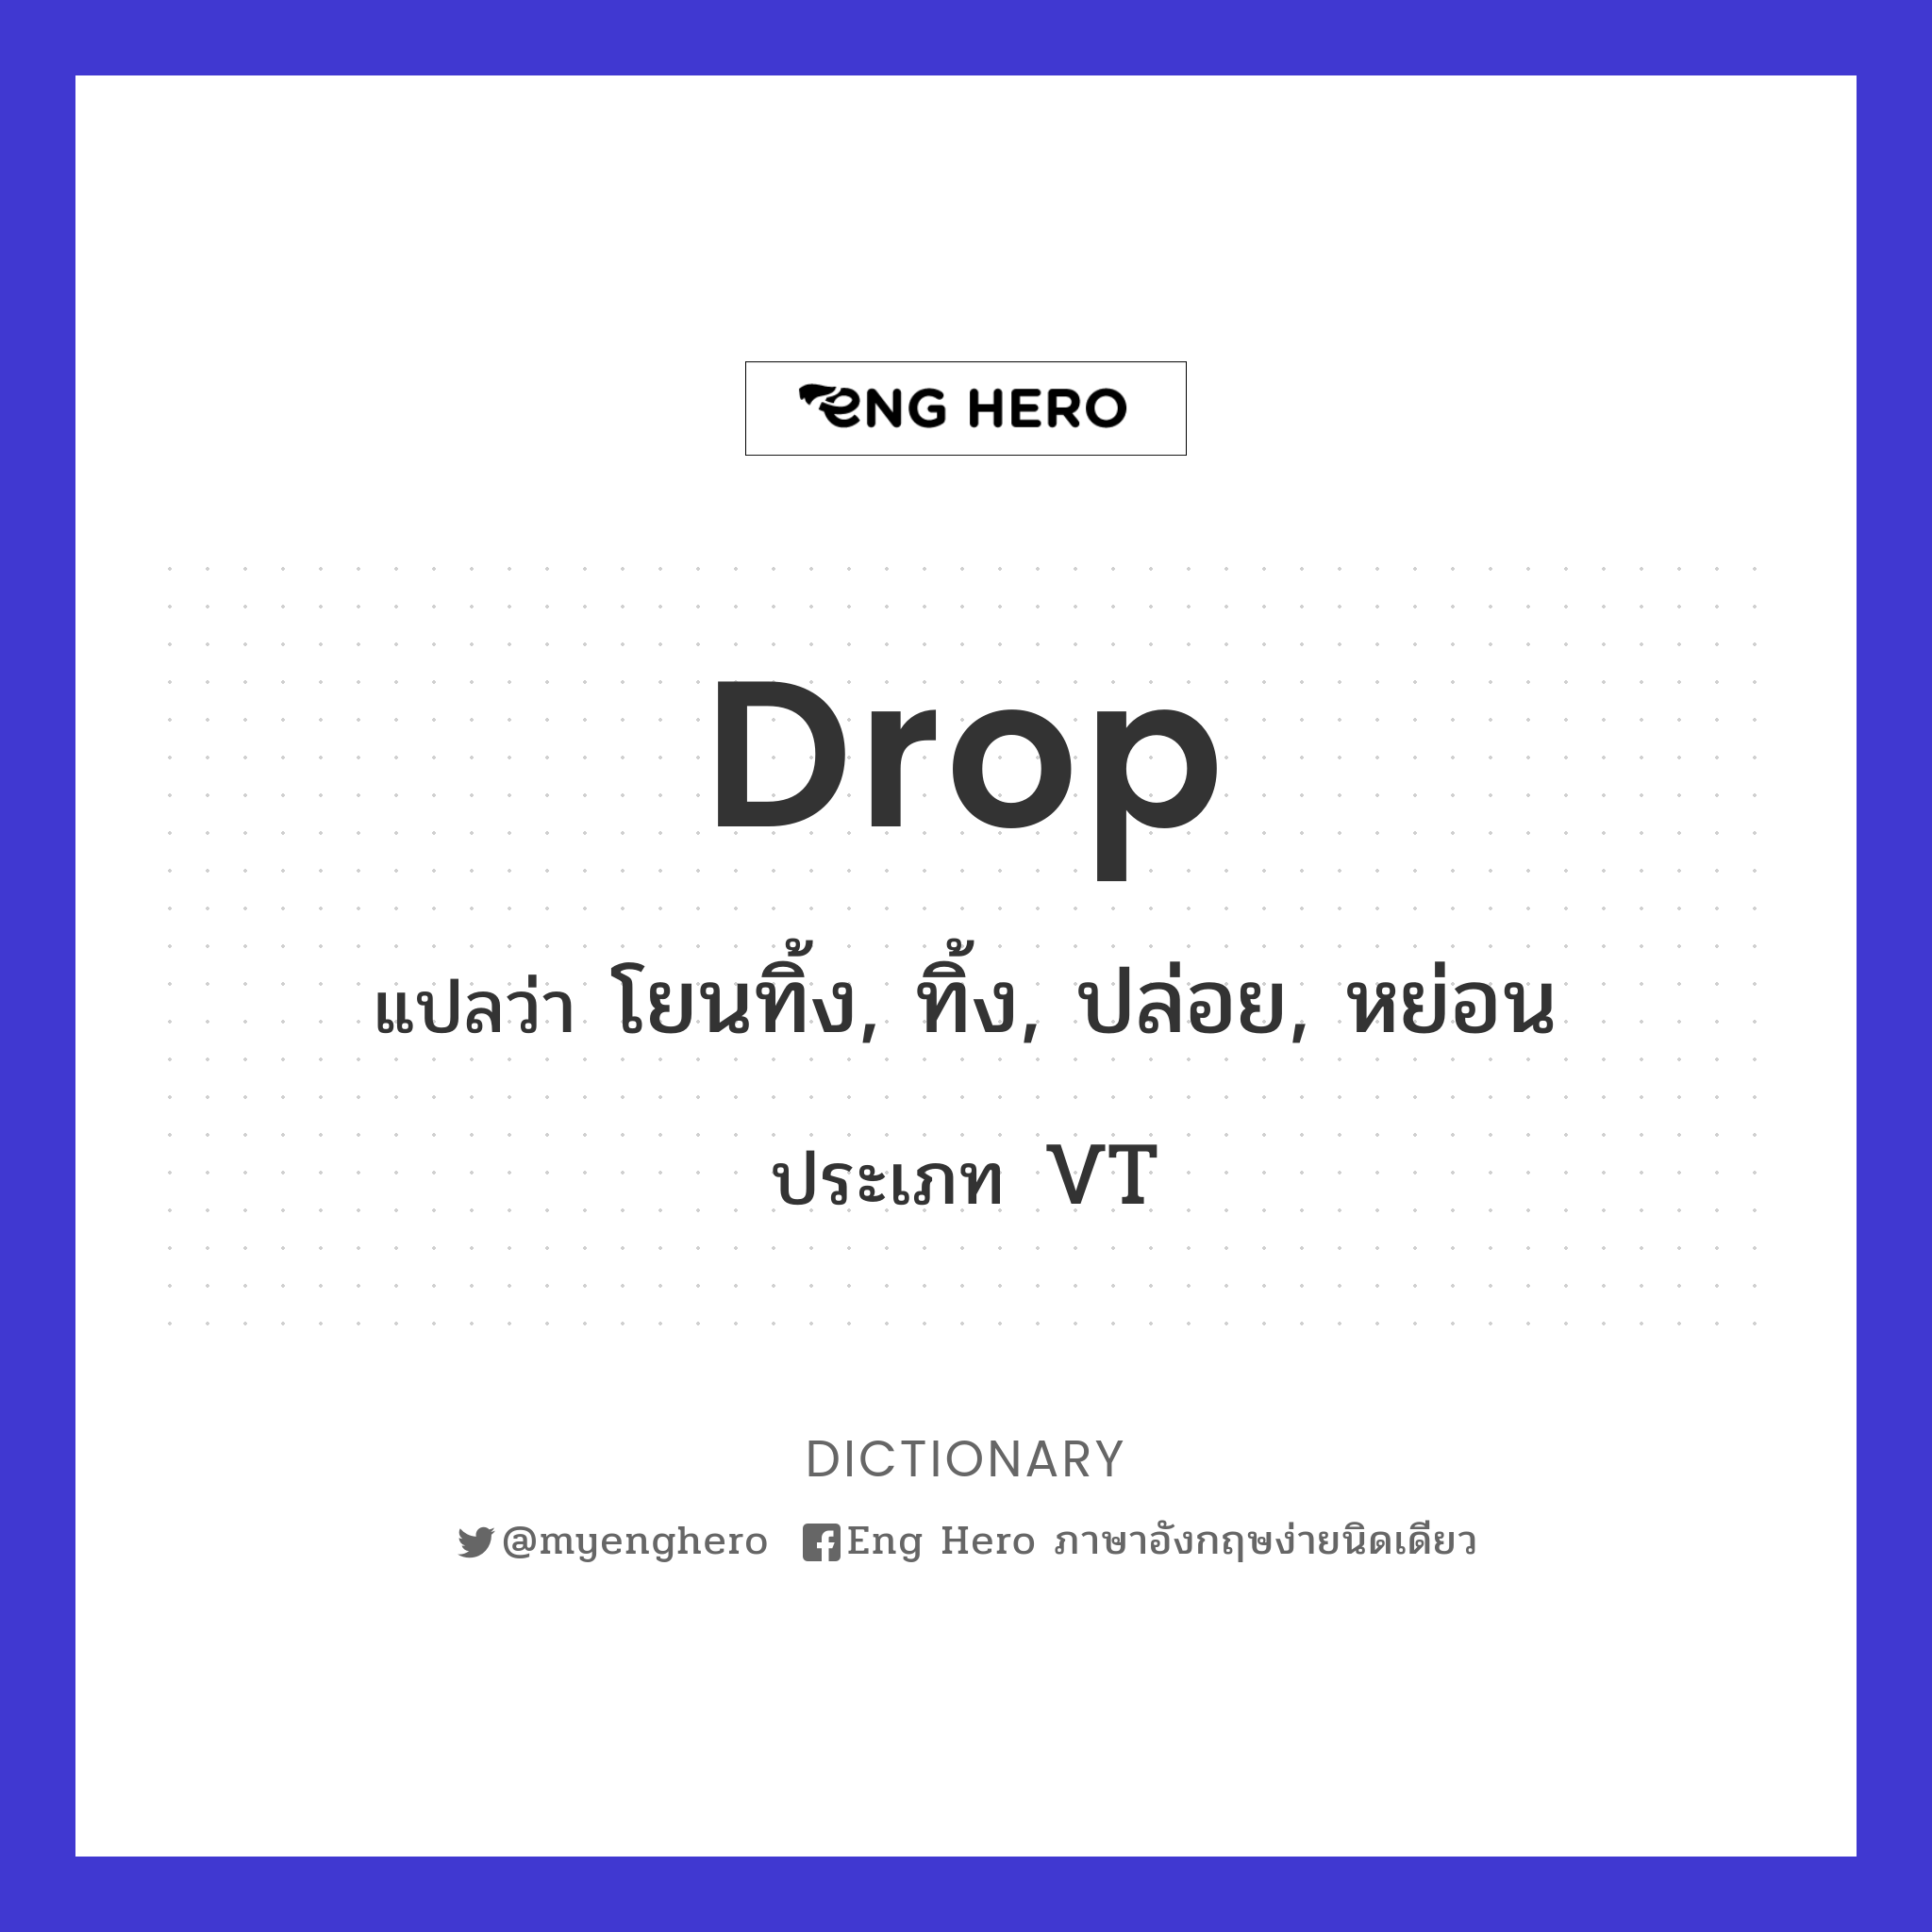 drop